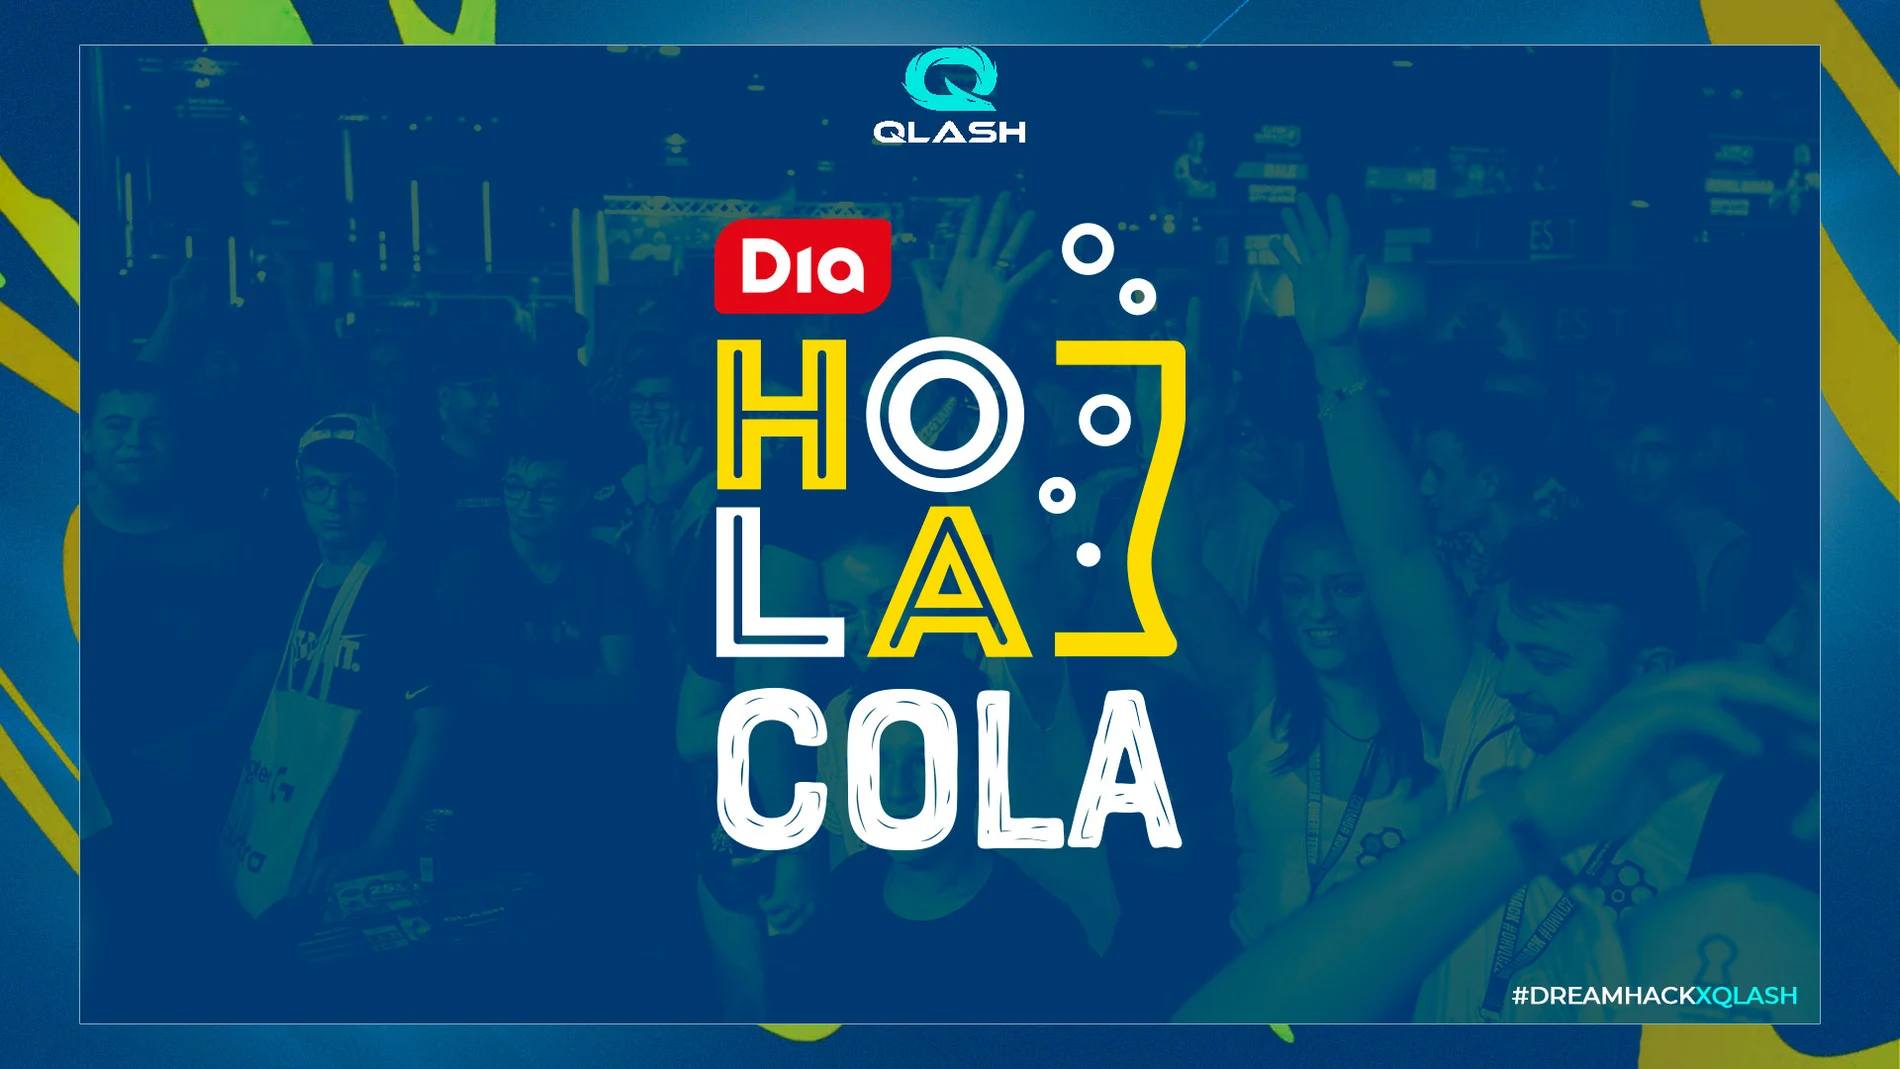 QLASH continuará con Hola Cola, la marca de refrescos de